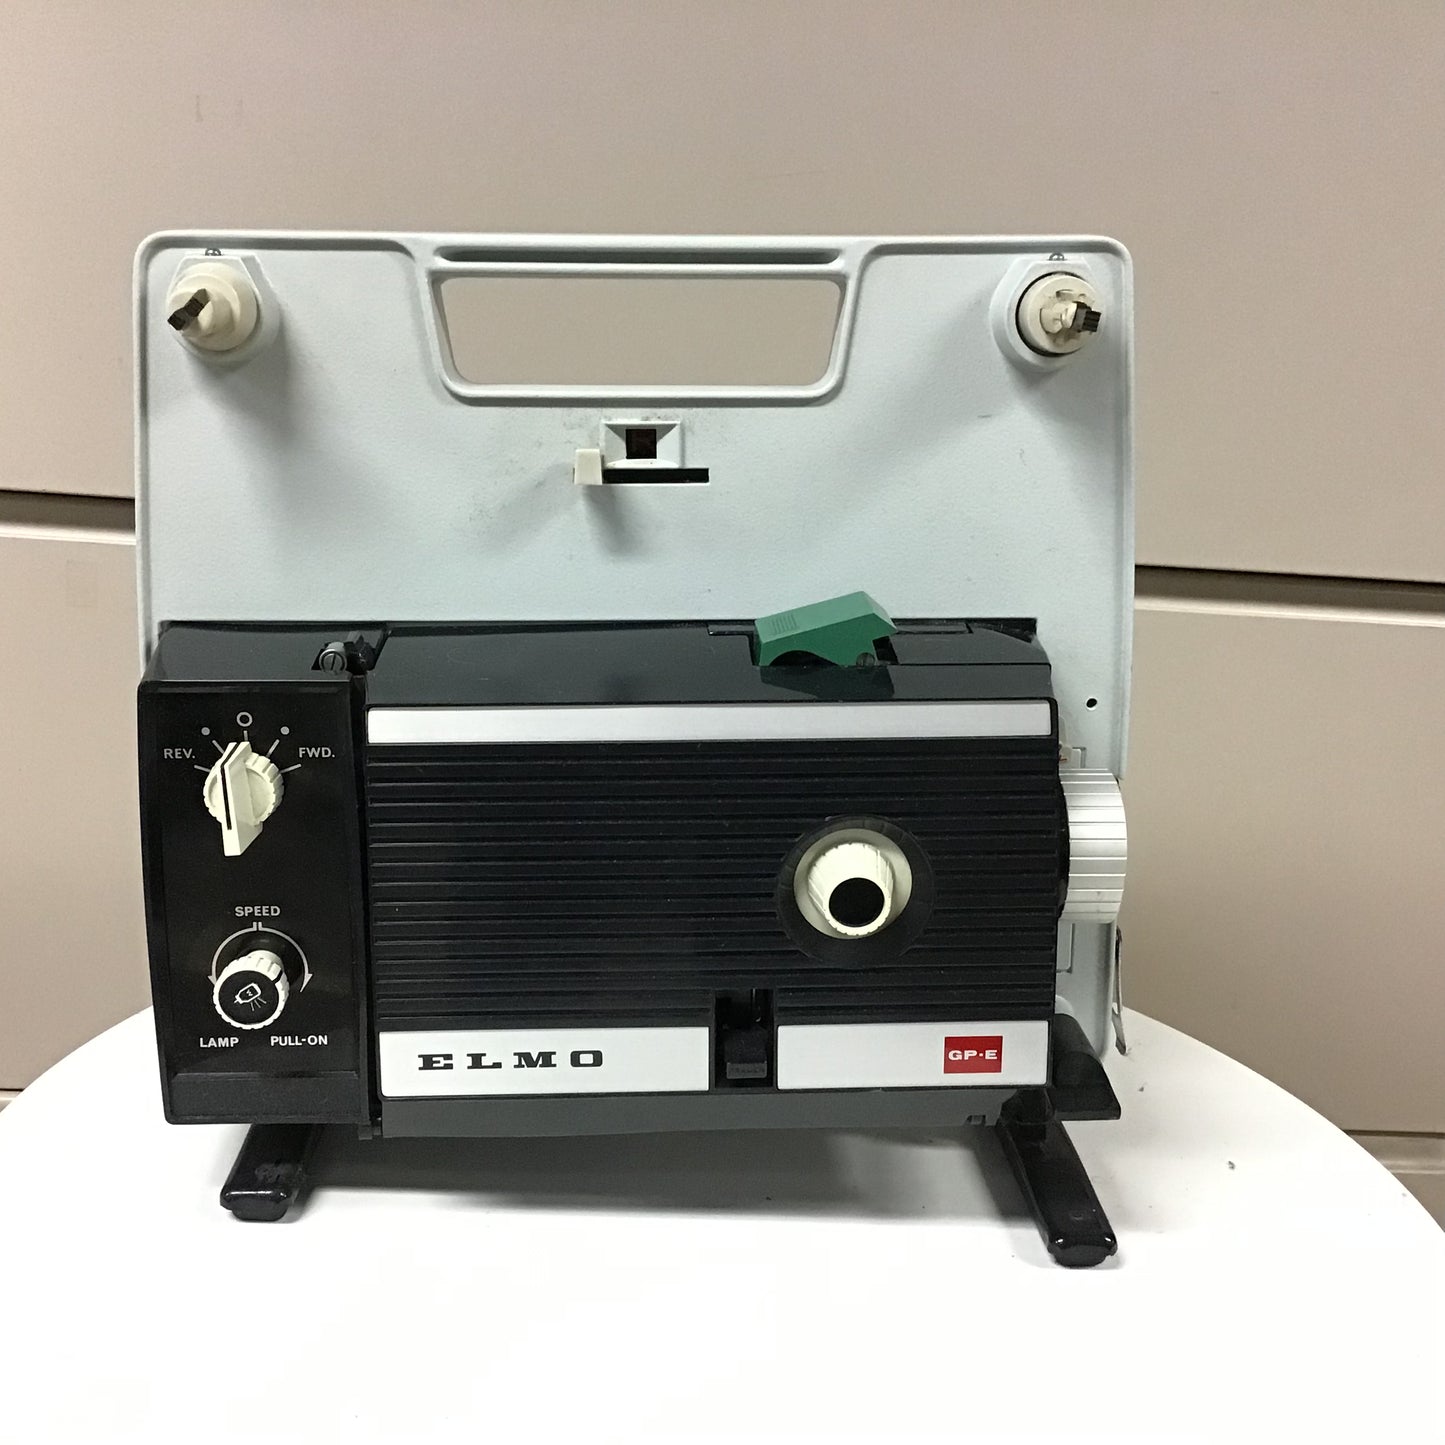 ELMO 8 mm GP-E movie projector Vintage